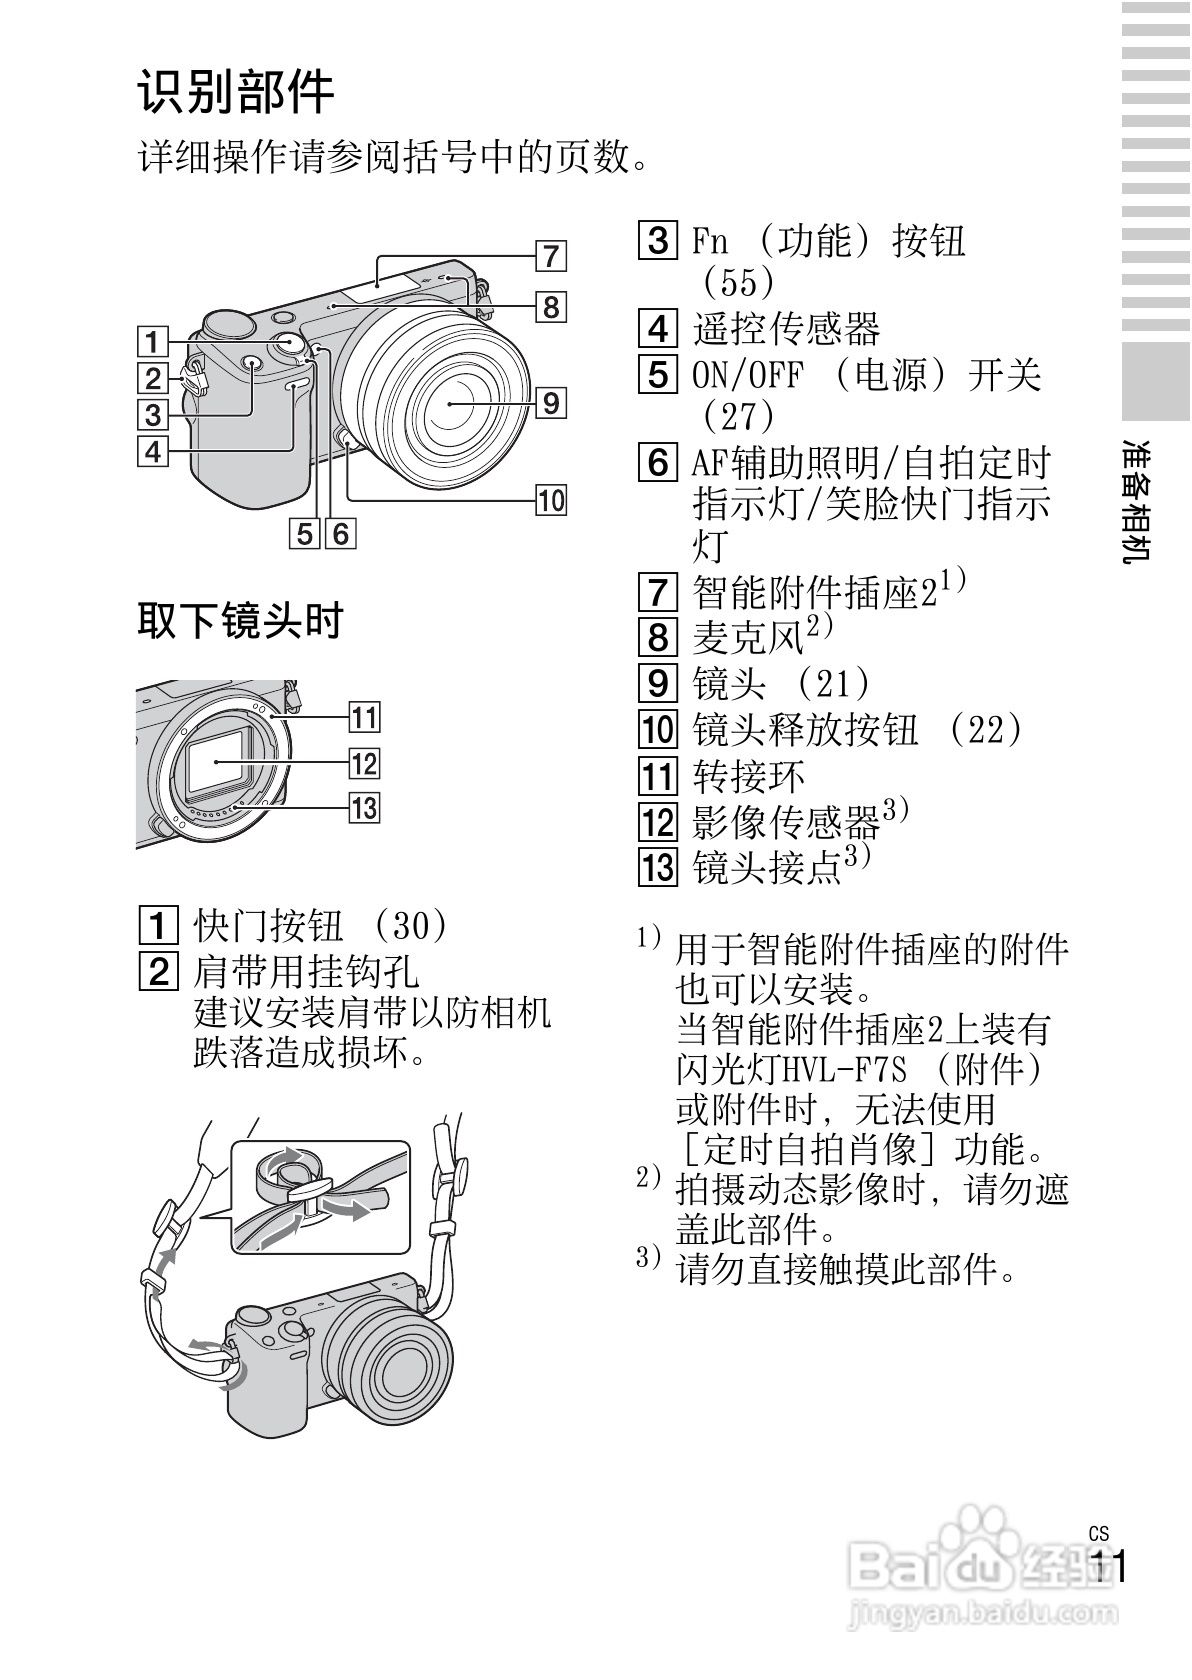 富士相机哪款好 富士相机分别型号推选365世界杯买球入口(图1)